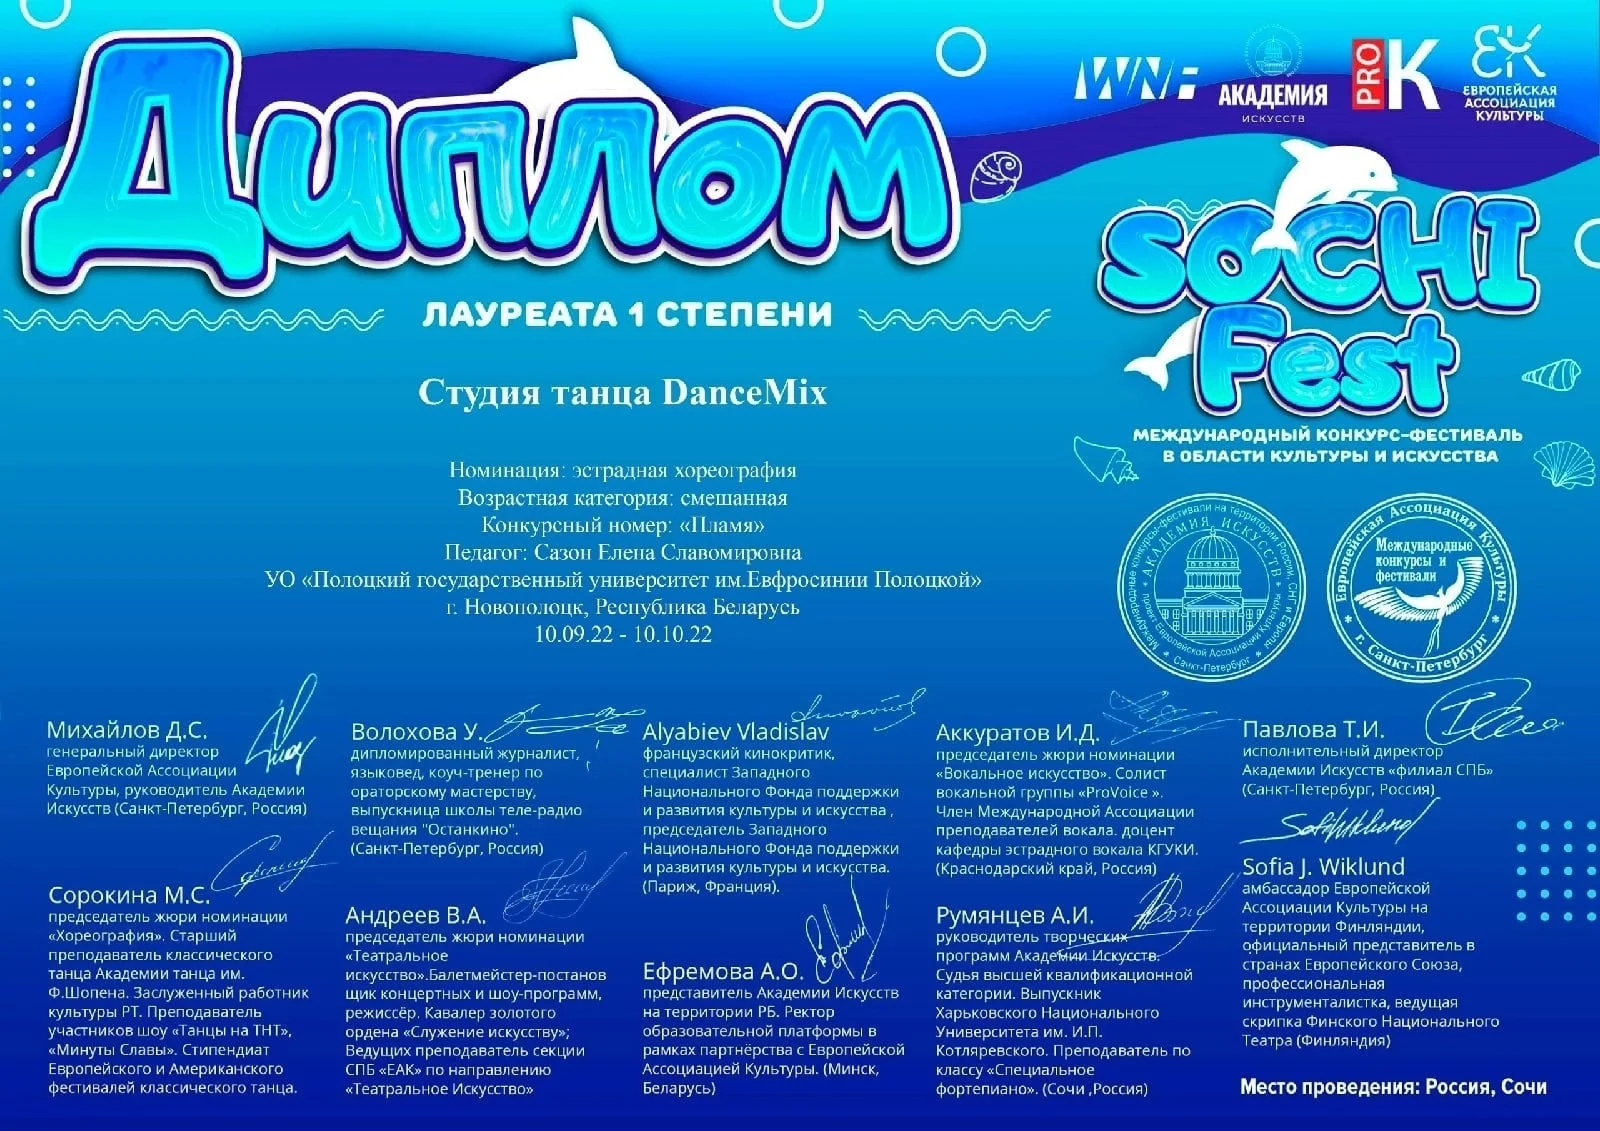 Международный конкурс-фестиваль в области культуры и искусства «Sochi fest»